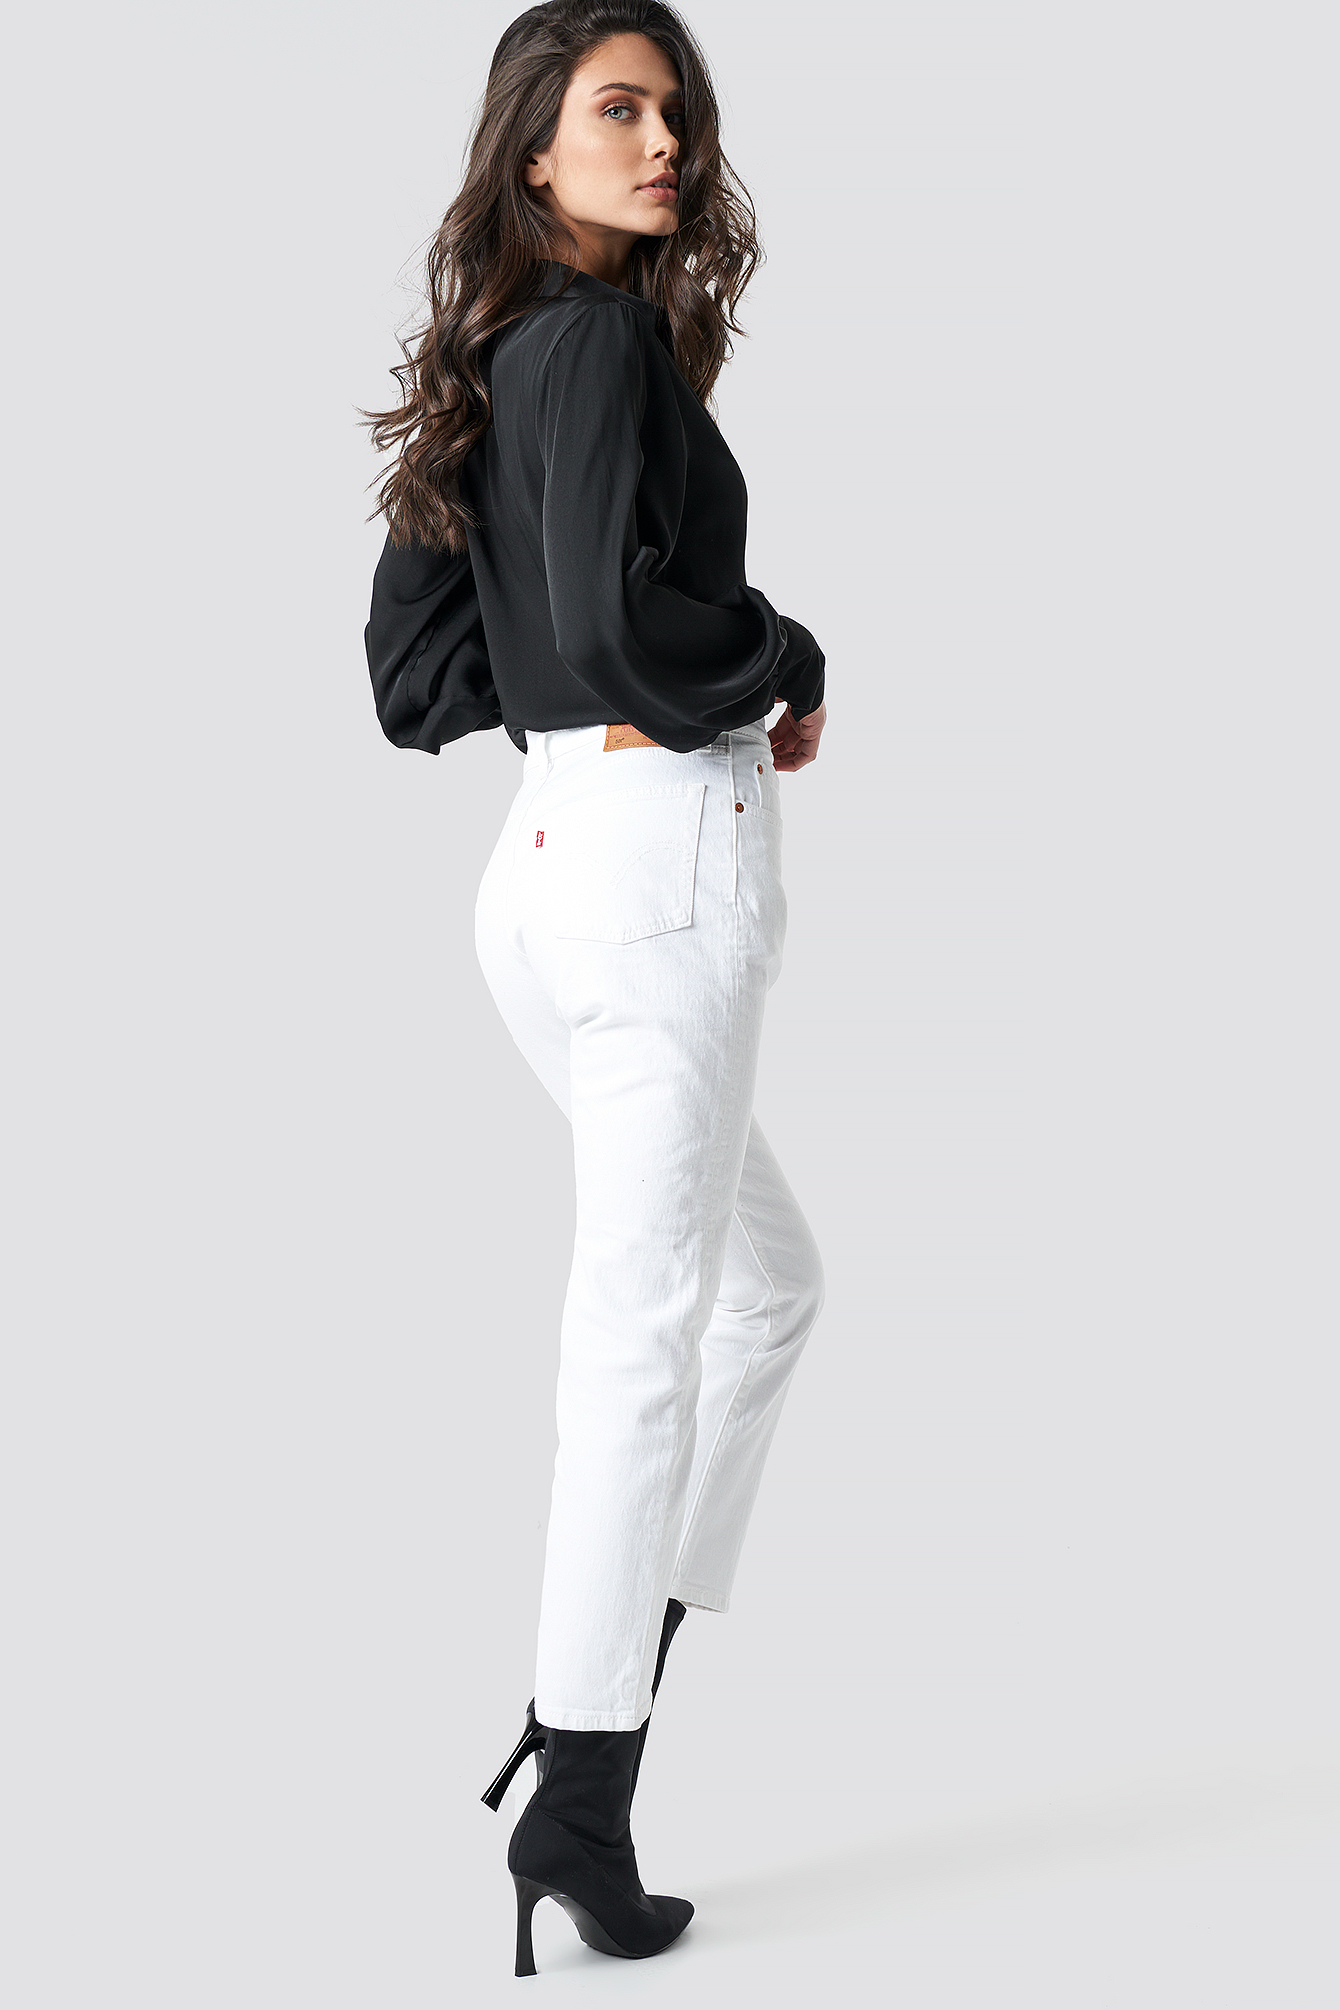 levis 501 jeans white